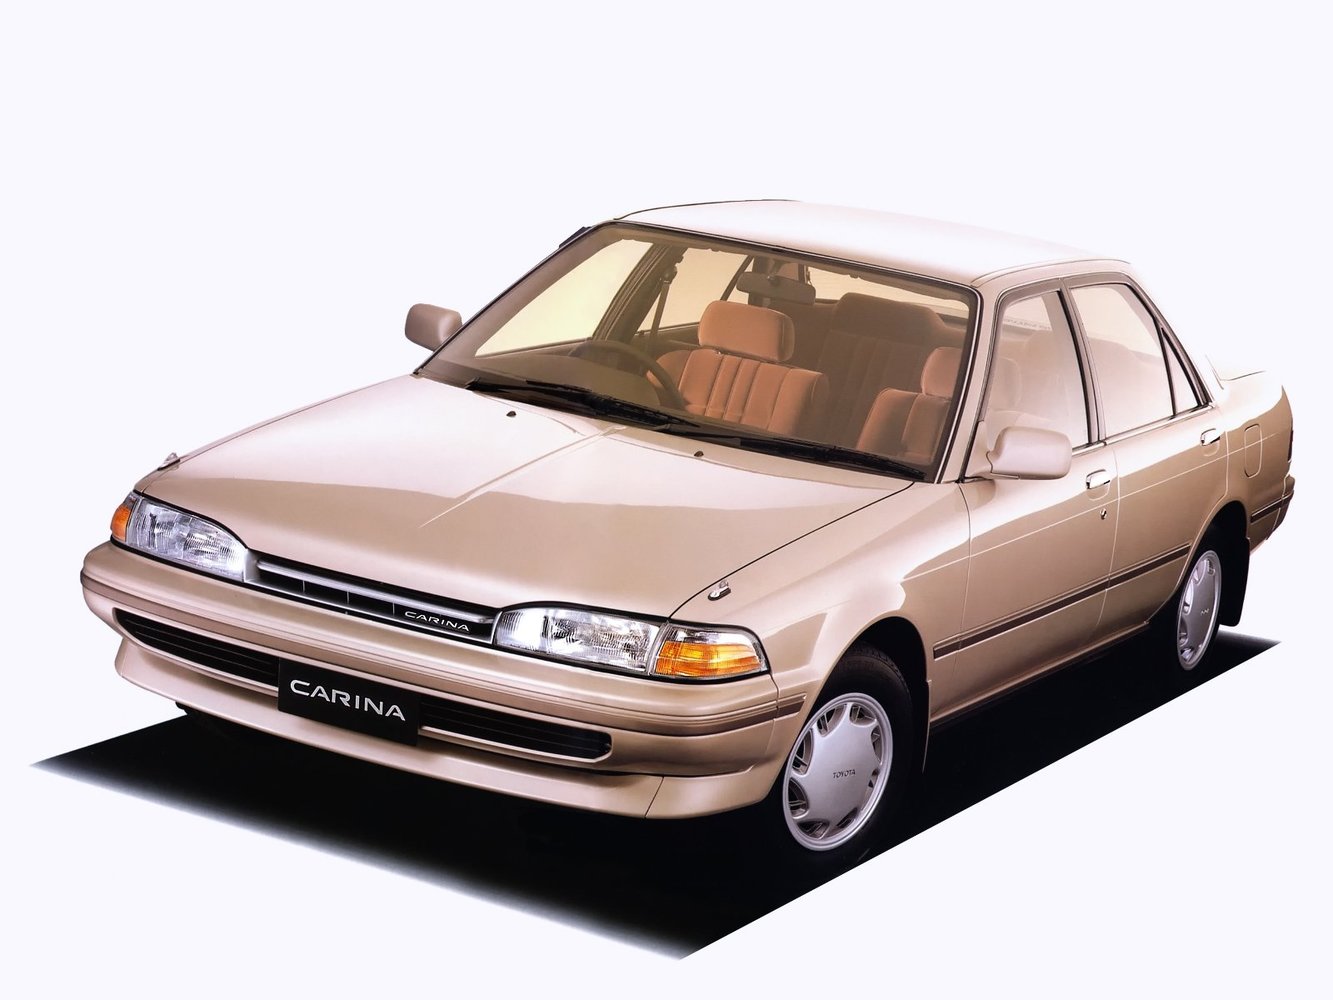 хэтчбек 5 дв. Toyota Carina 1988 - 1992г выпуска модификация 2.0 MT (73 л.с.)